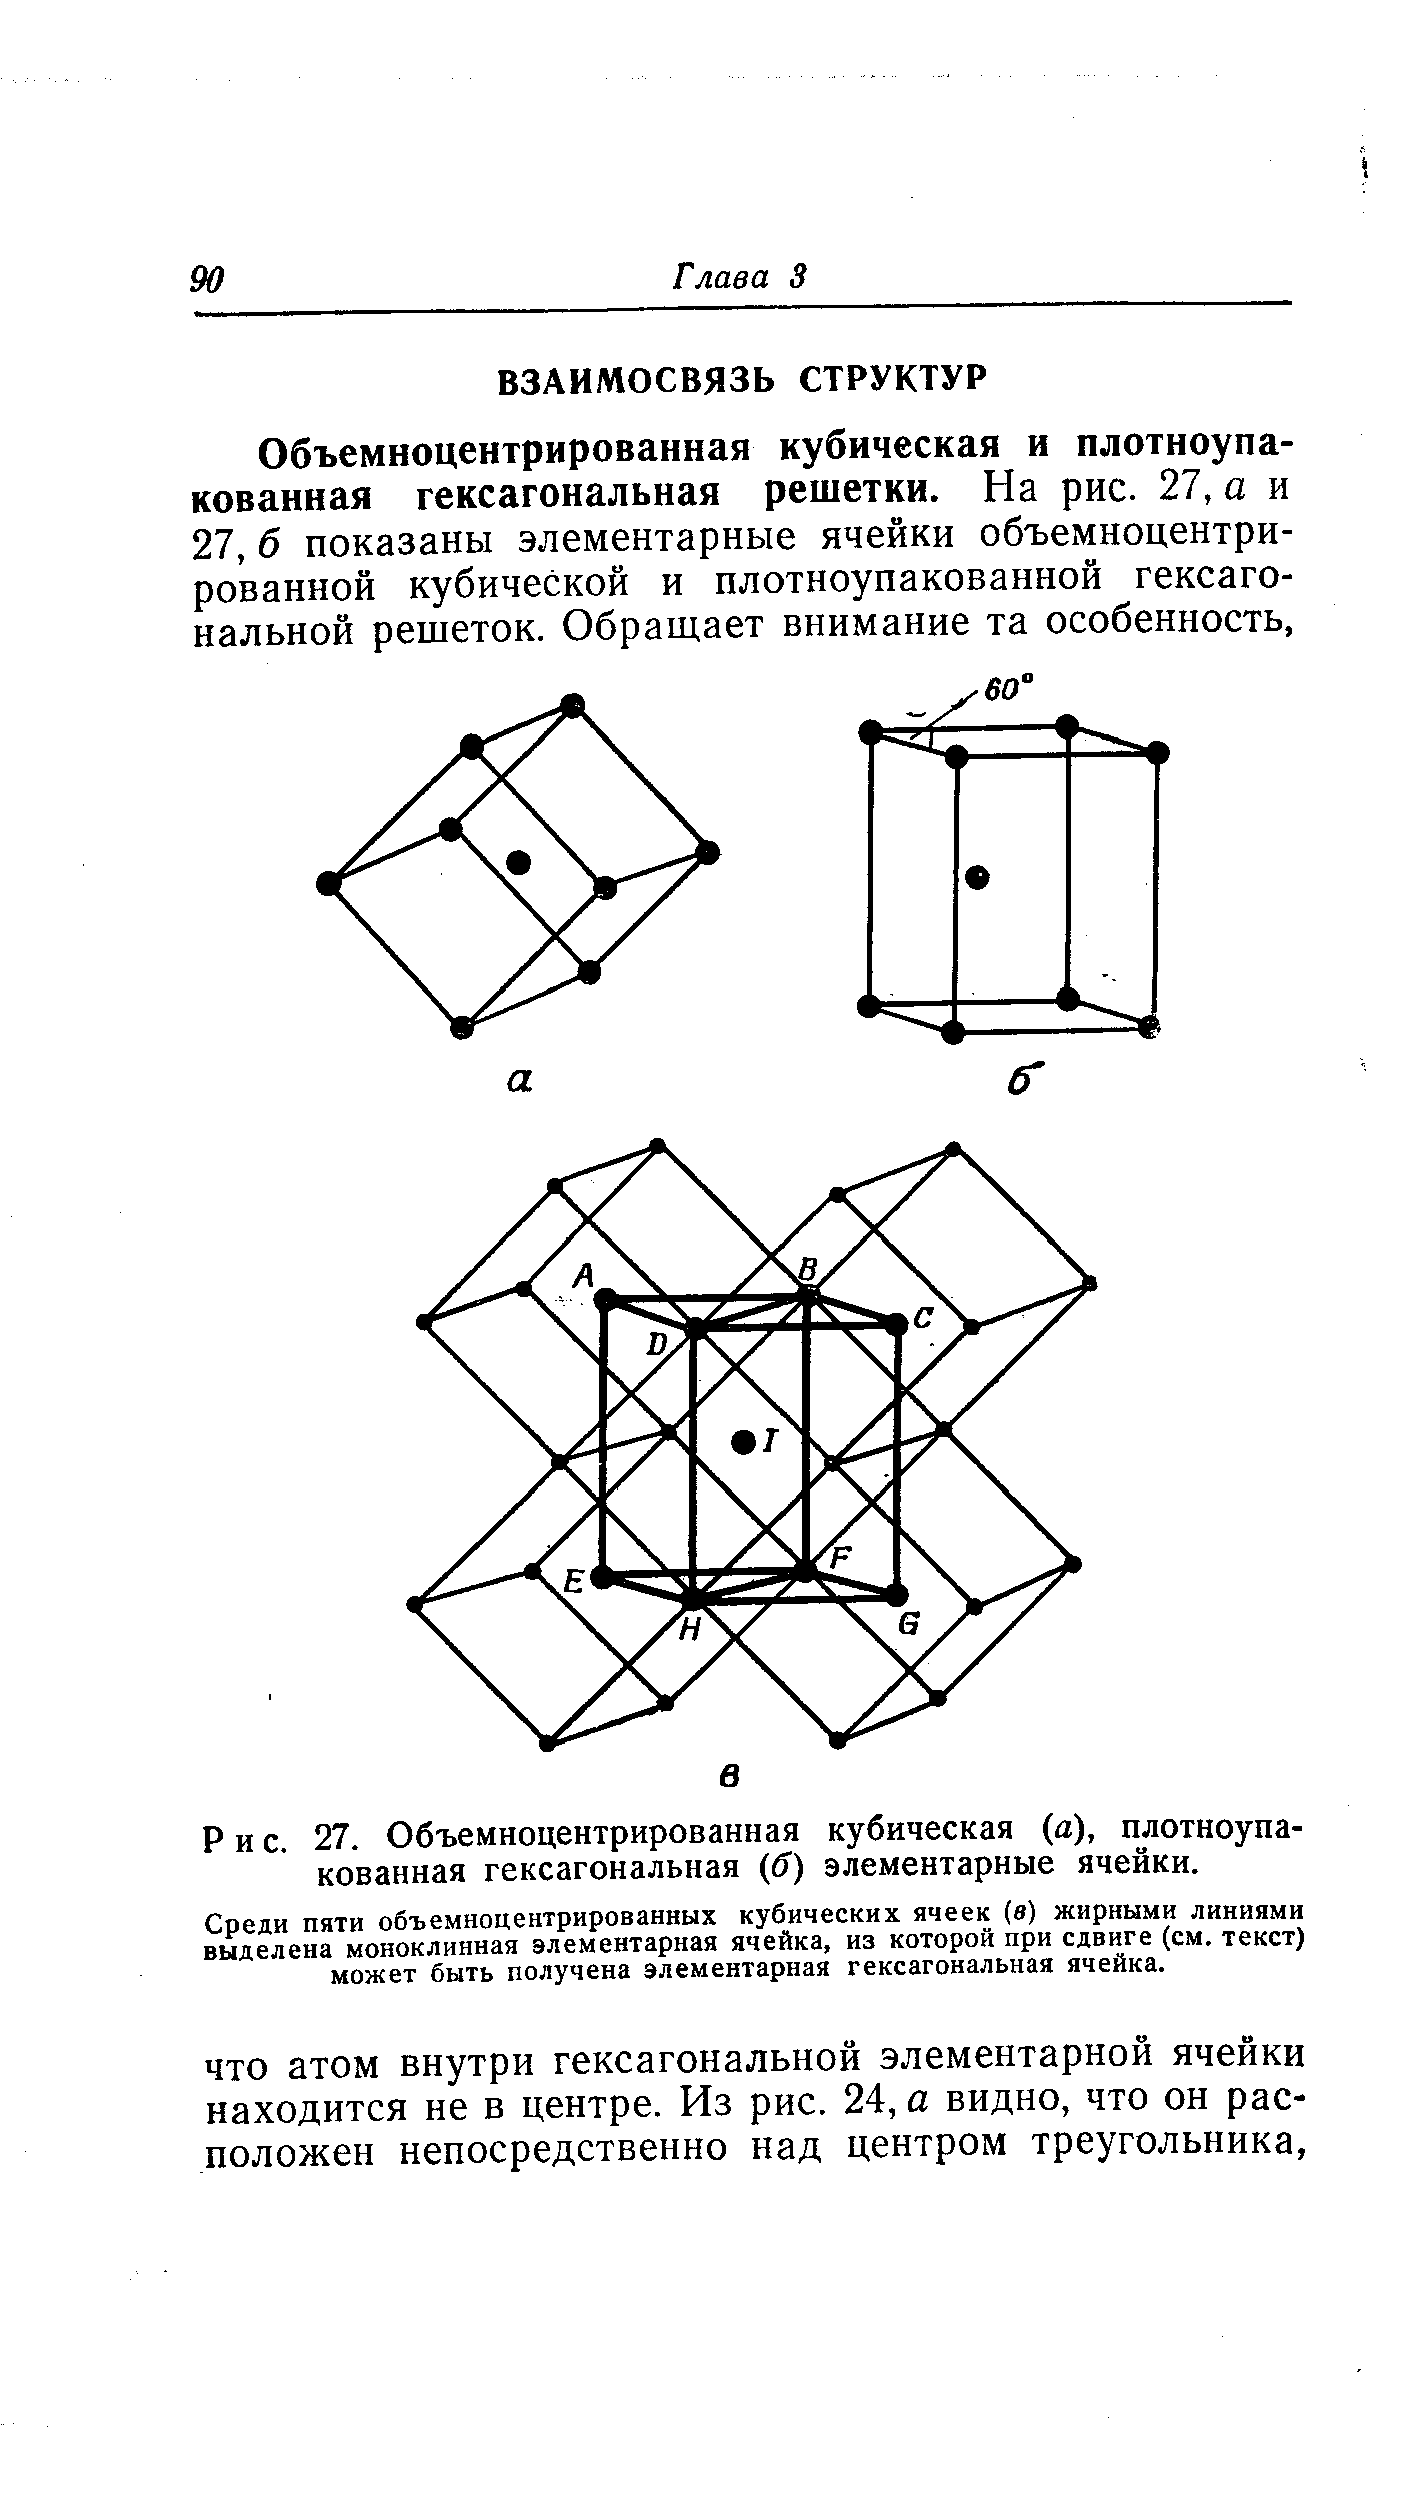 Среди пяти объемноцентрированных кубических ячеек (в) жирными линиями выделена моноклинная элементарная ячейка, из которой при сдвиге (см. текст) может быть получена элементарная гексагональная ячейка.